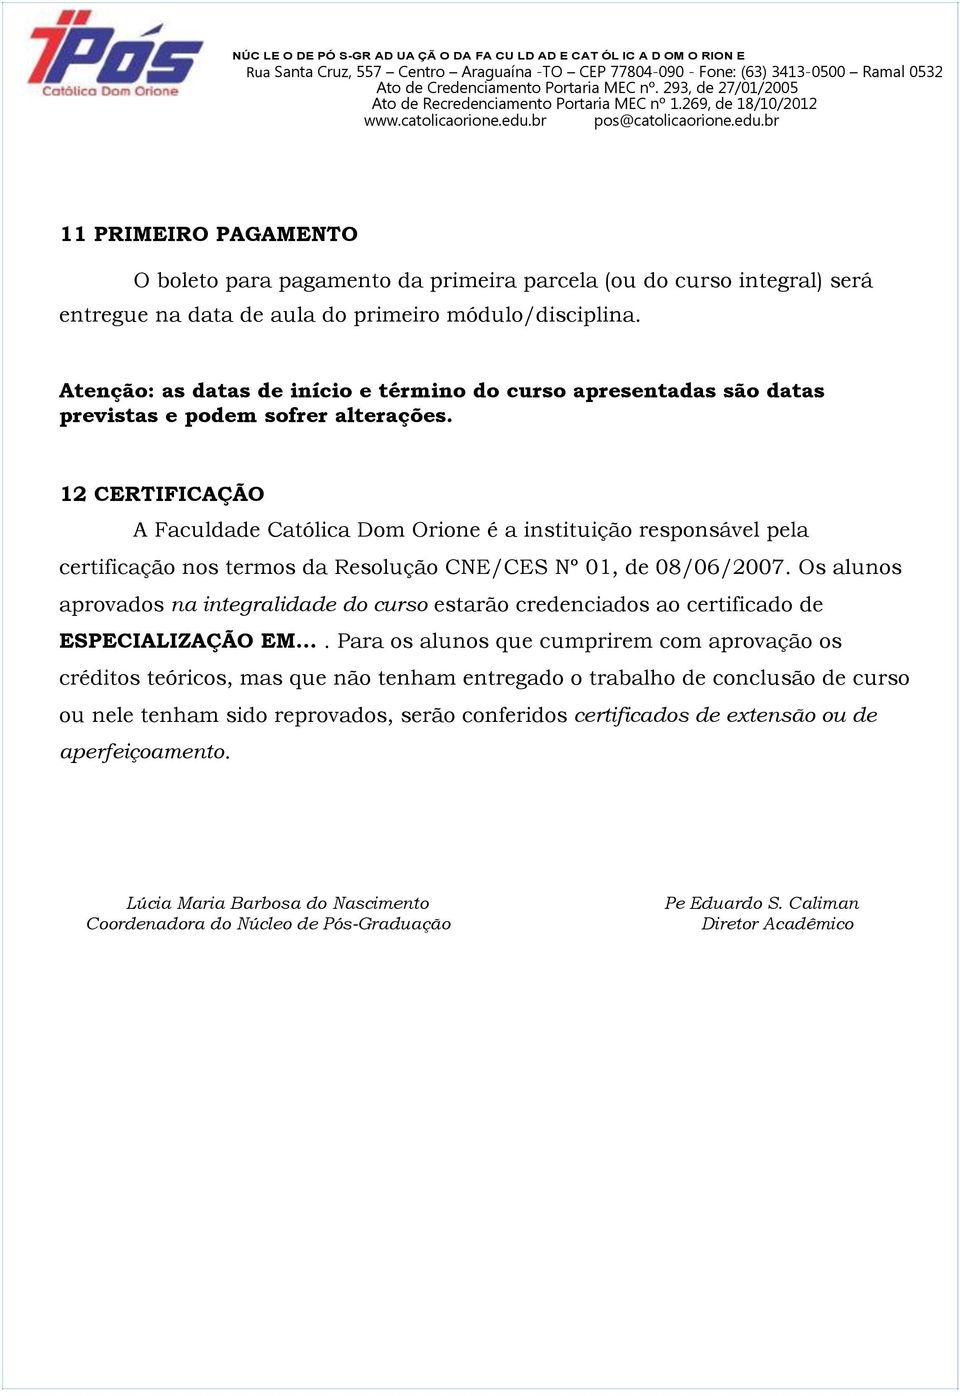 12 CERTIFICAÇÃO A Faculdade Católica Dom Orione é a instituição responsável pela certificação nos termos da Resolução CNE/CES Nº 01, de 08/06/2007.